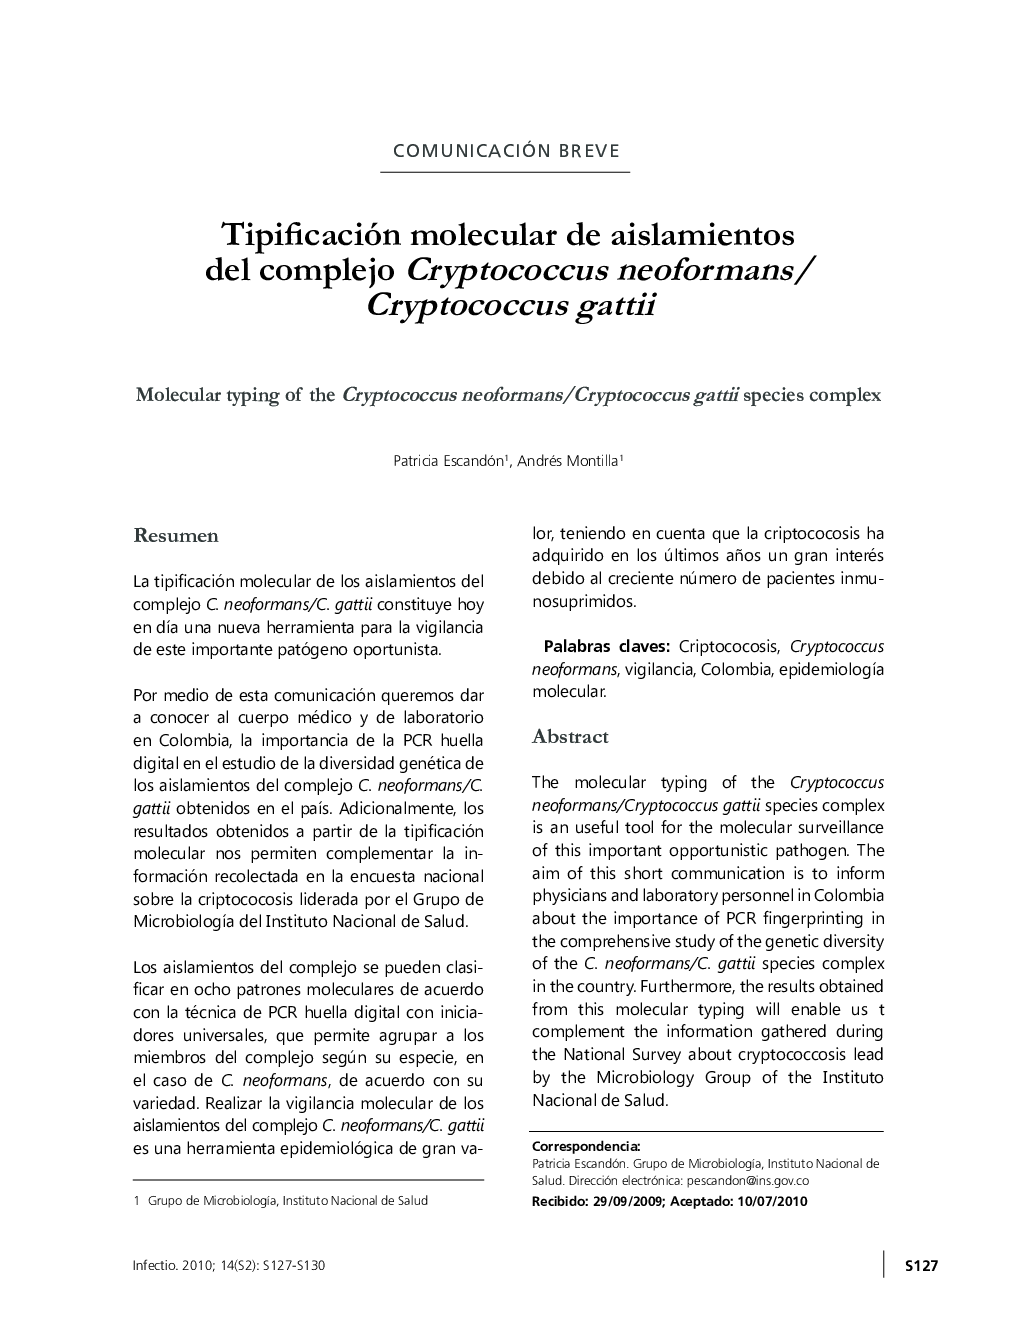 Tipificación molecular de aislamientos del complejo Cryptococcus neoformans/Cryptococcus gattii